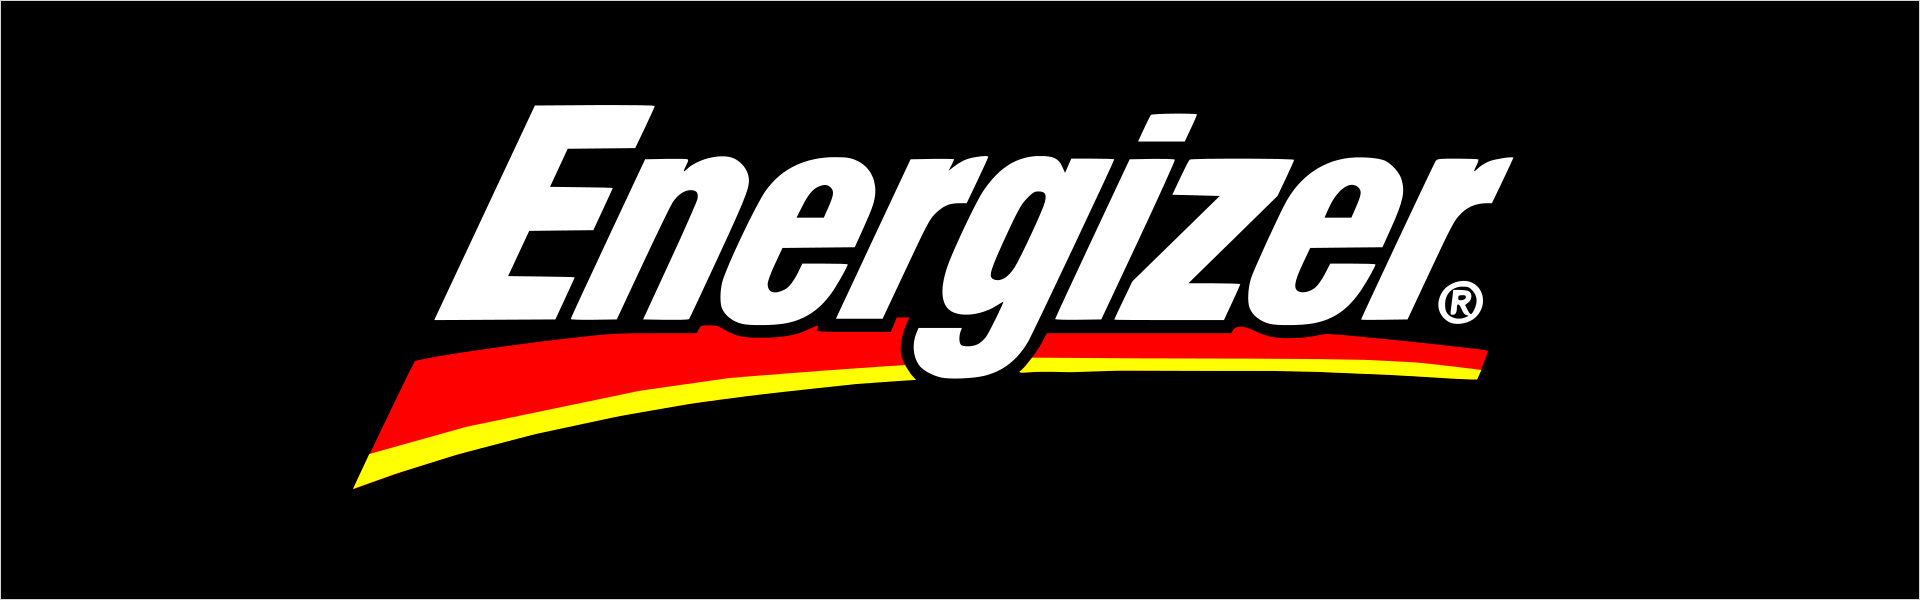 Energizer Hardcase Energy E520, 16GB, Dual Sim, Black Energizer